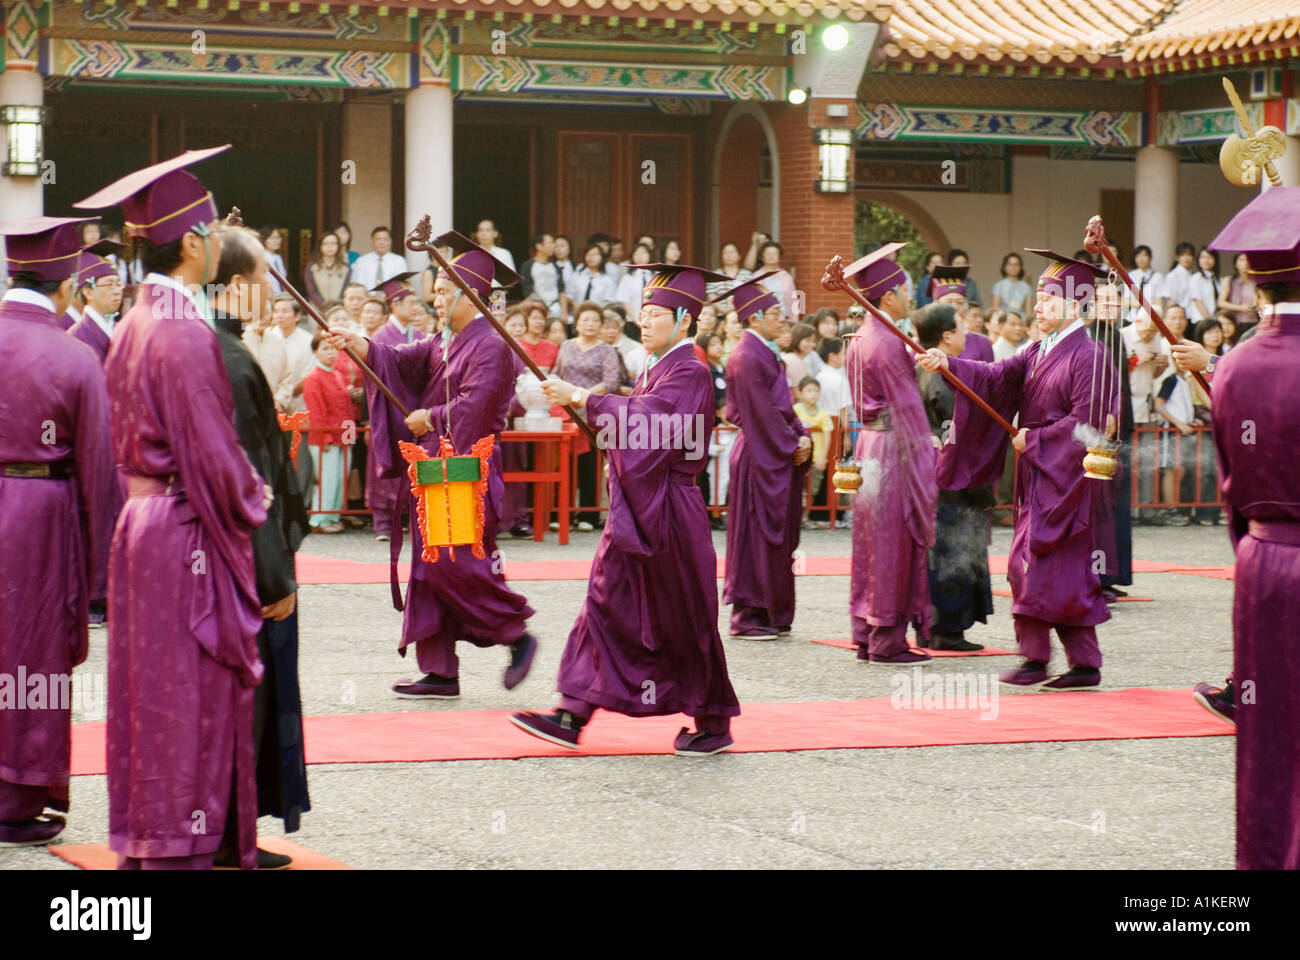 Dignitario processione al Maestro's Day celebrazione tempio confuciano Taichung taiwan repubblica popolare di Cina Foto Stock